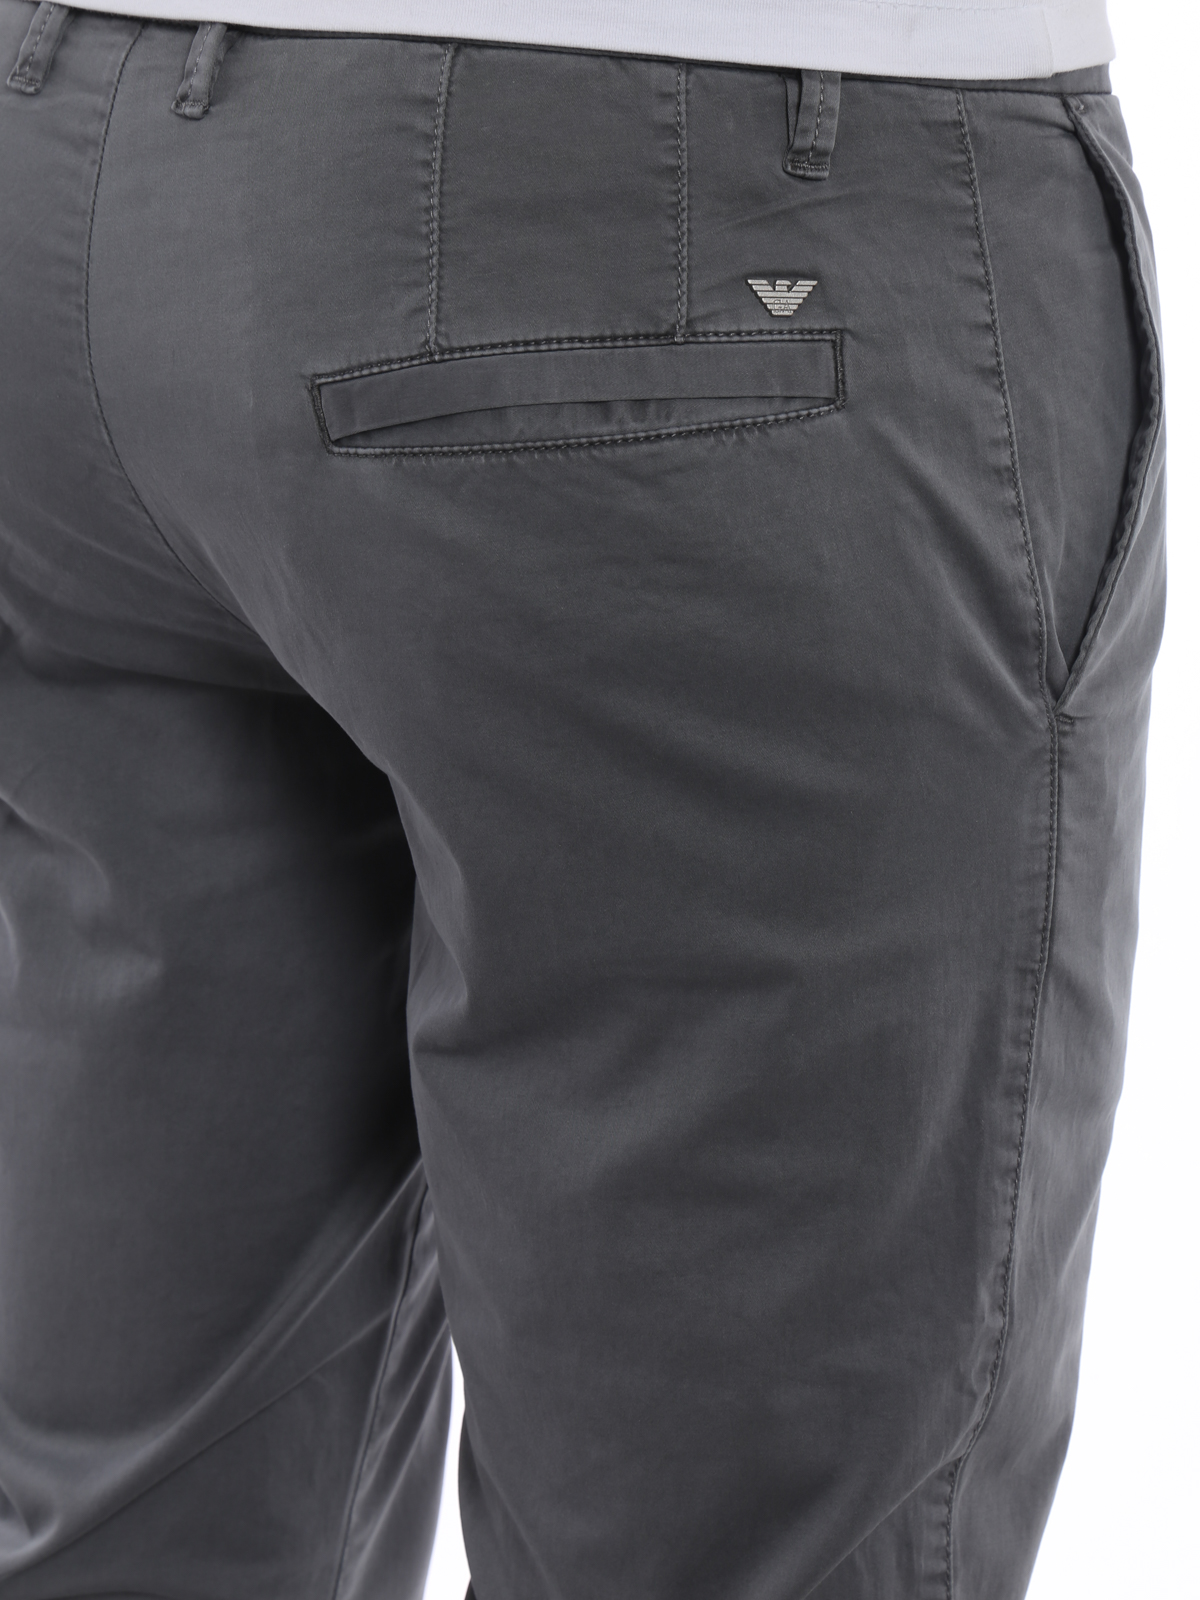 Casual trousers Emporio Armani - Grey stretch cotton chino trousers -  3Z1P151NEDZ0620